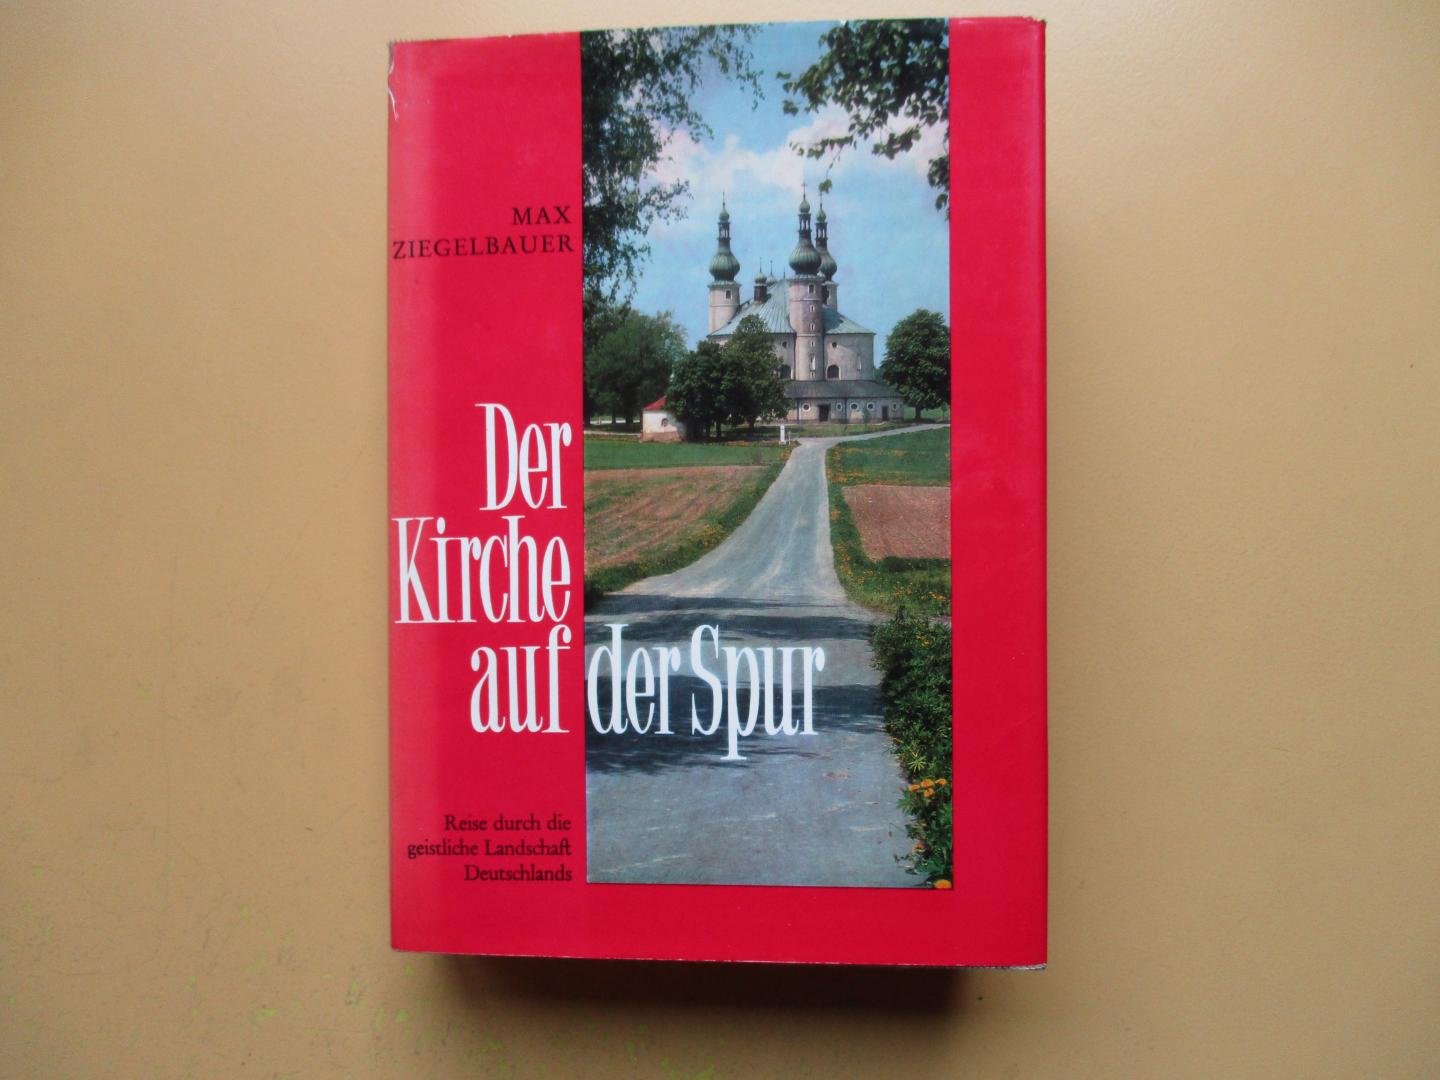 Ziegelbauer, Max - Der Kirche auf der Spur / Band I./ Reise durch die geistliche Landschaft Deutschlands